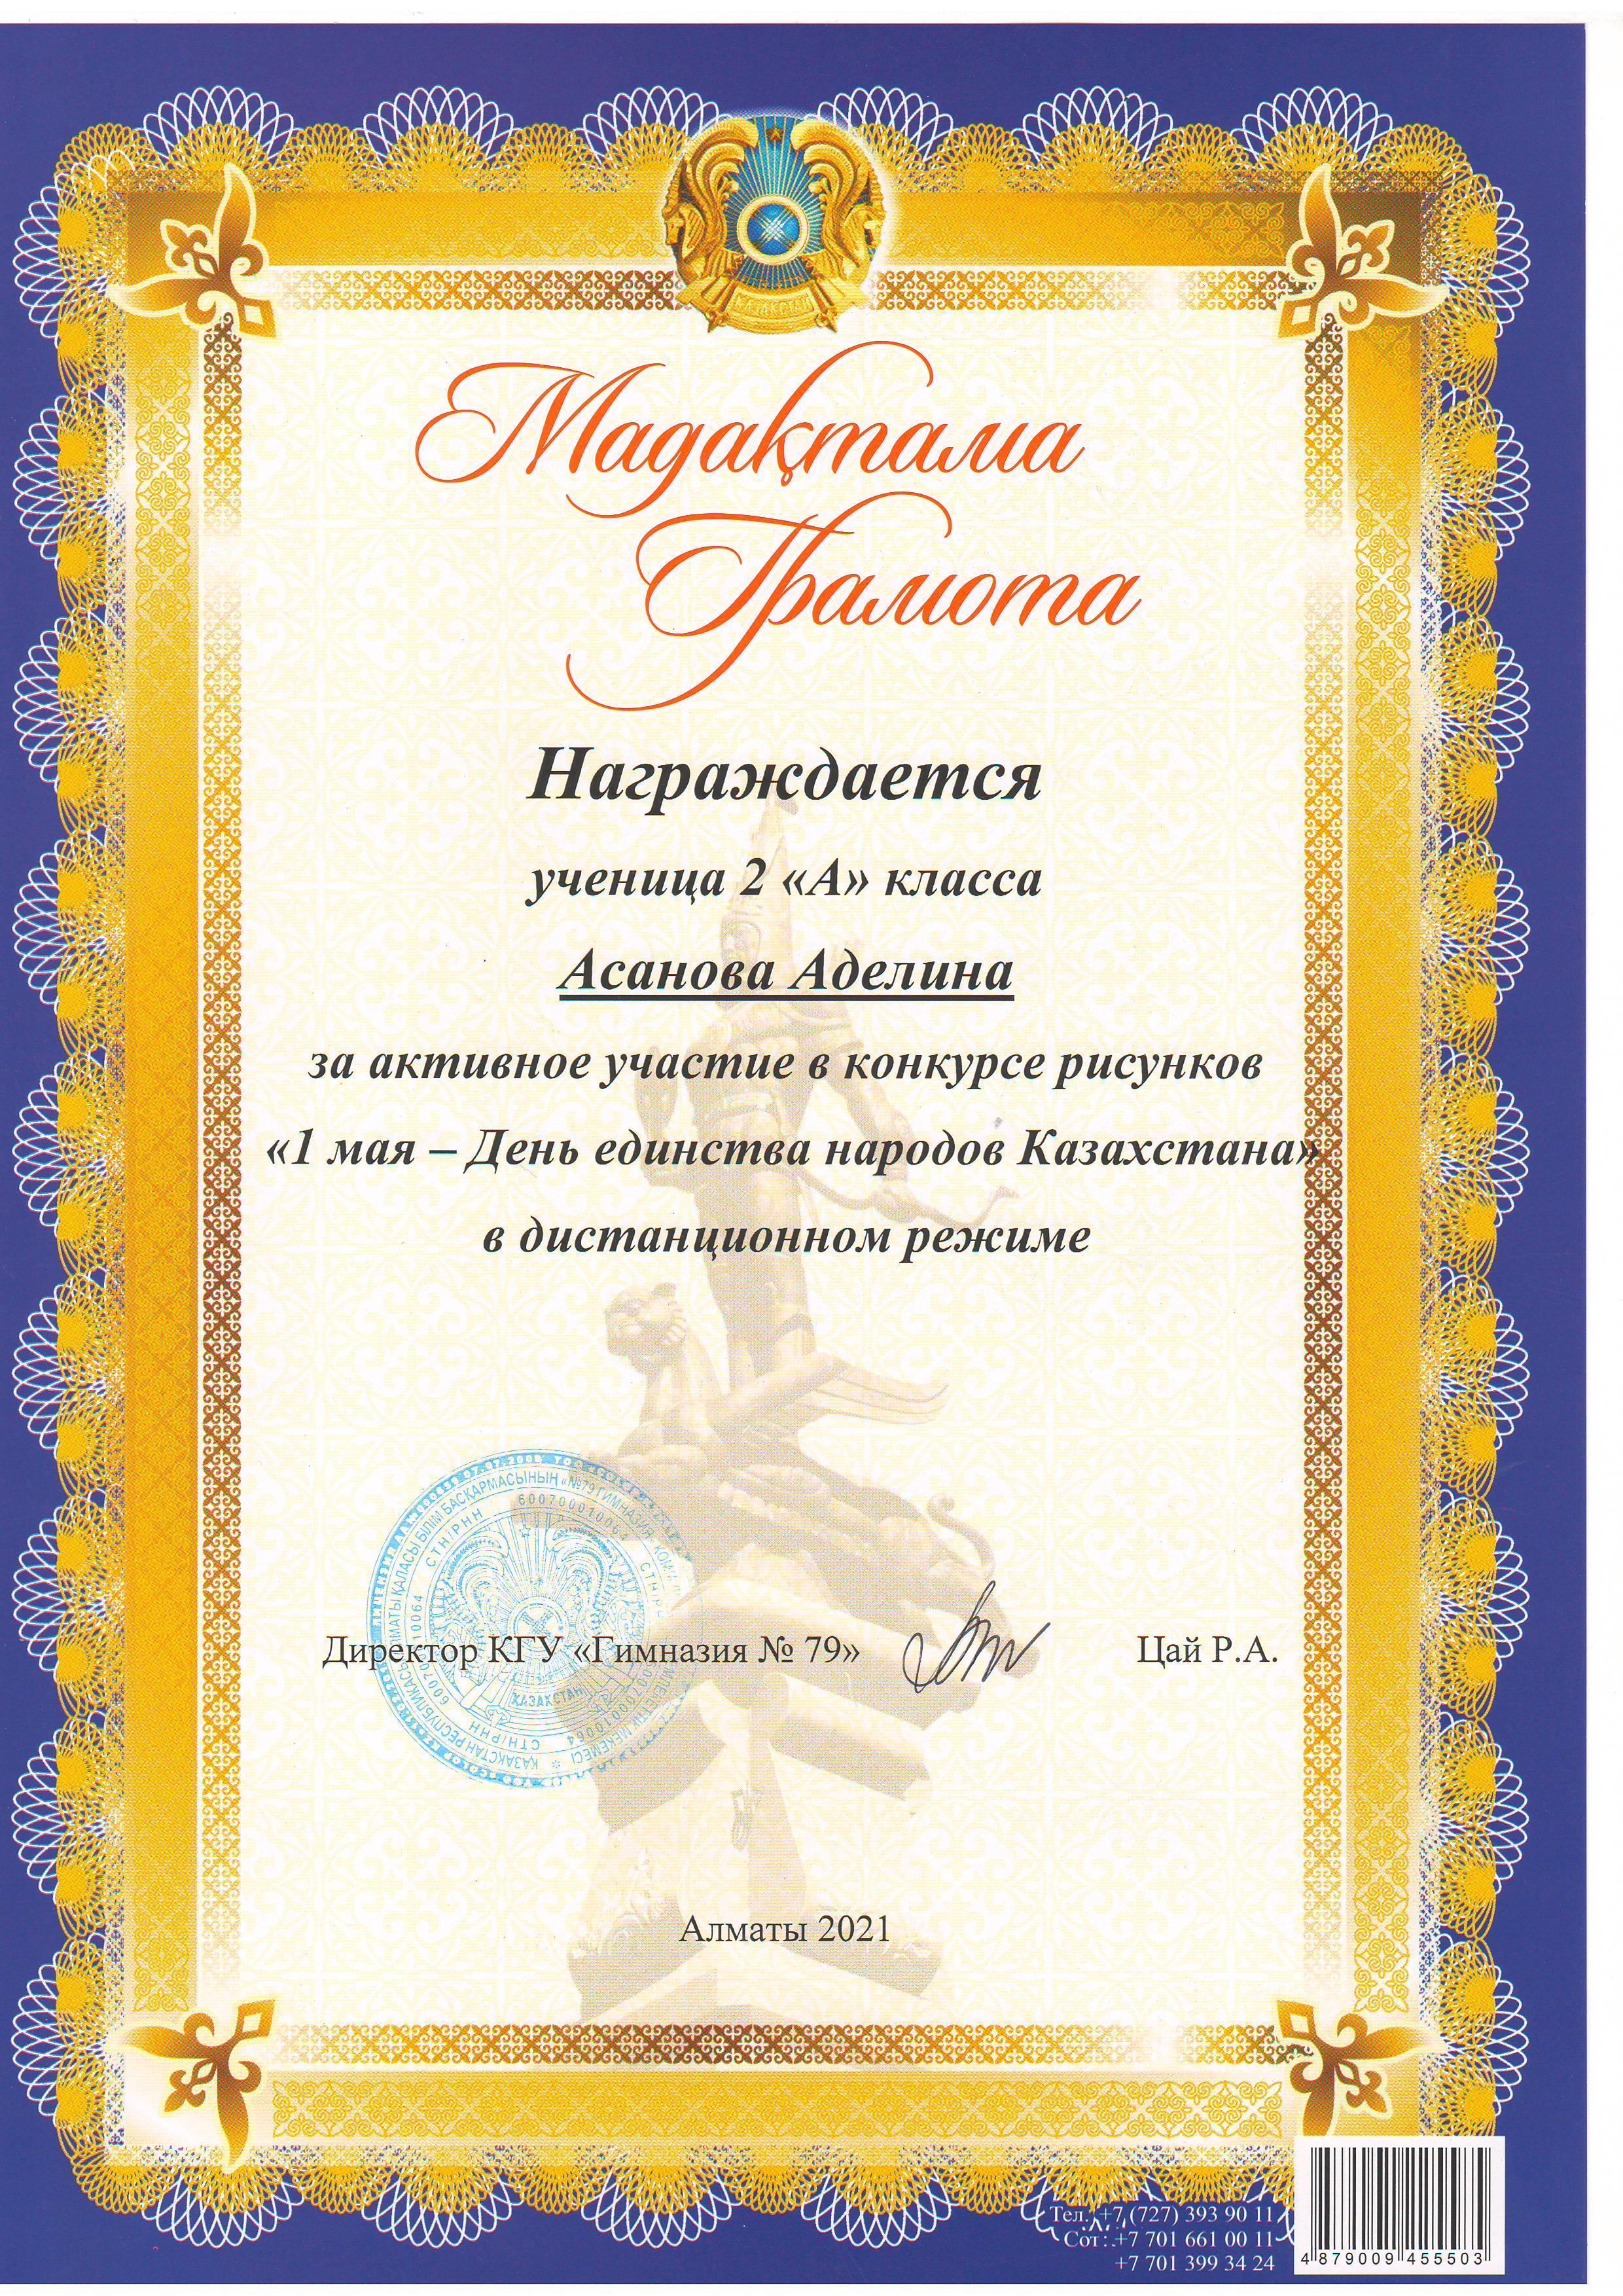 Конкурс детских рисунков "1 мая -День Единства Народов Казахстана". Поздравляем!